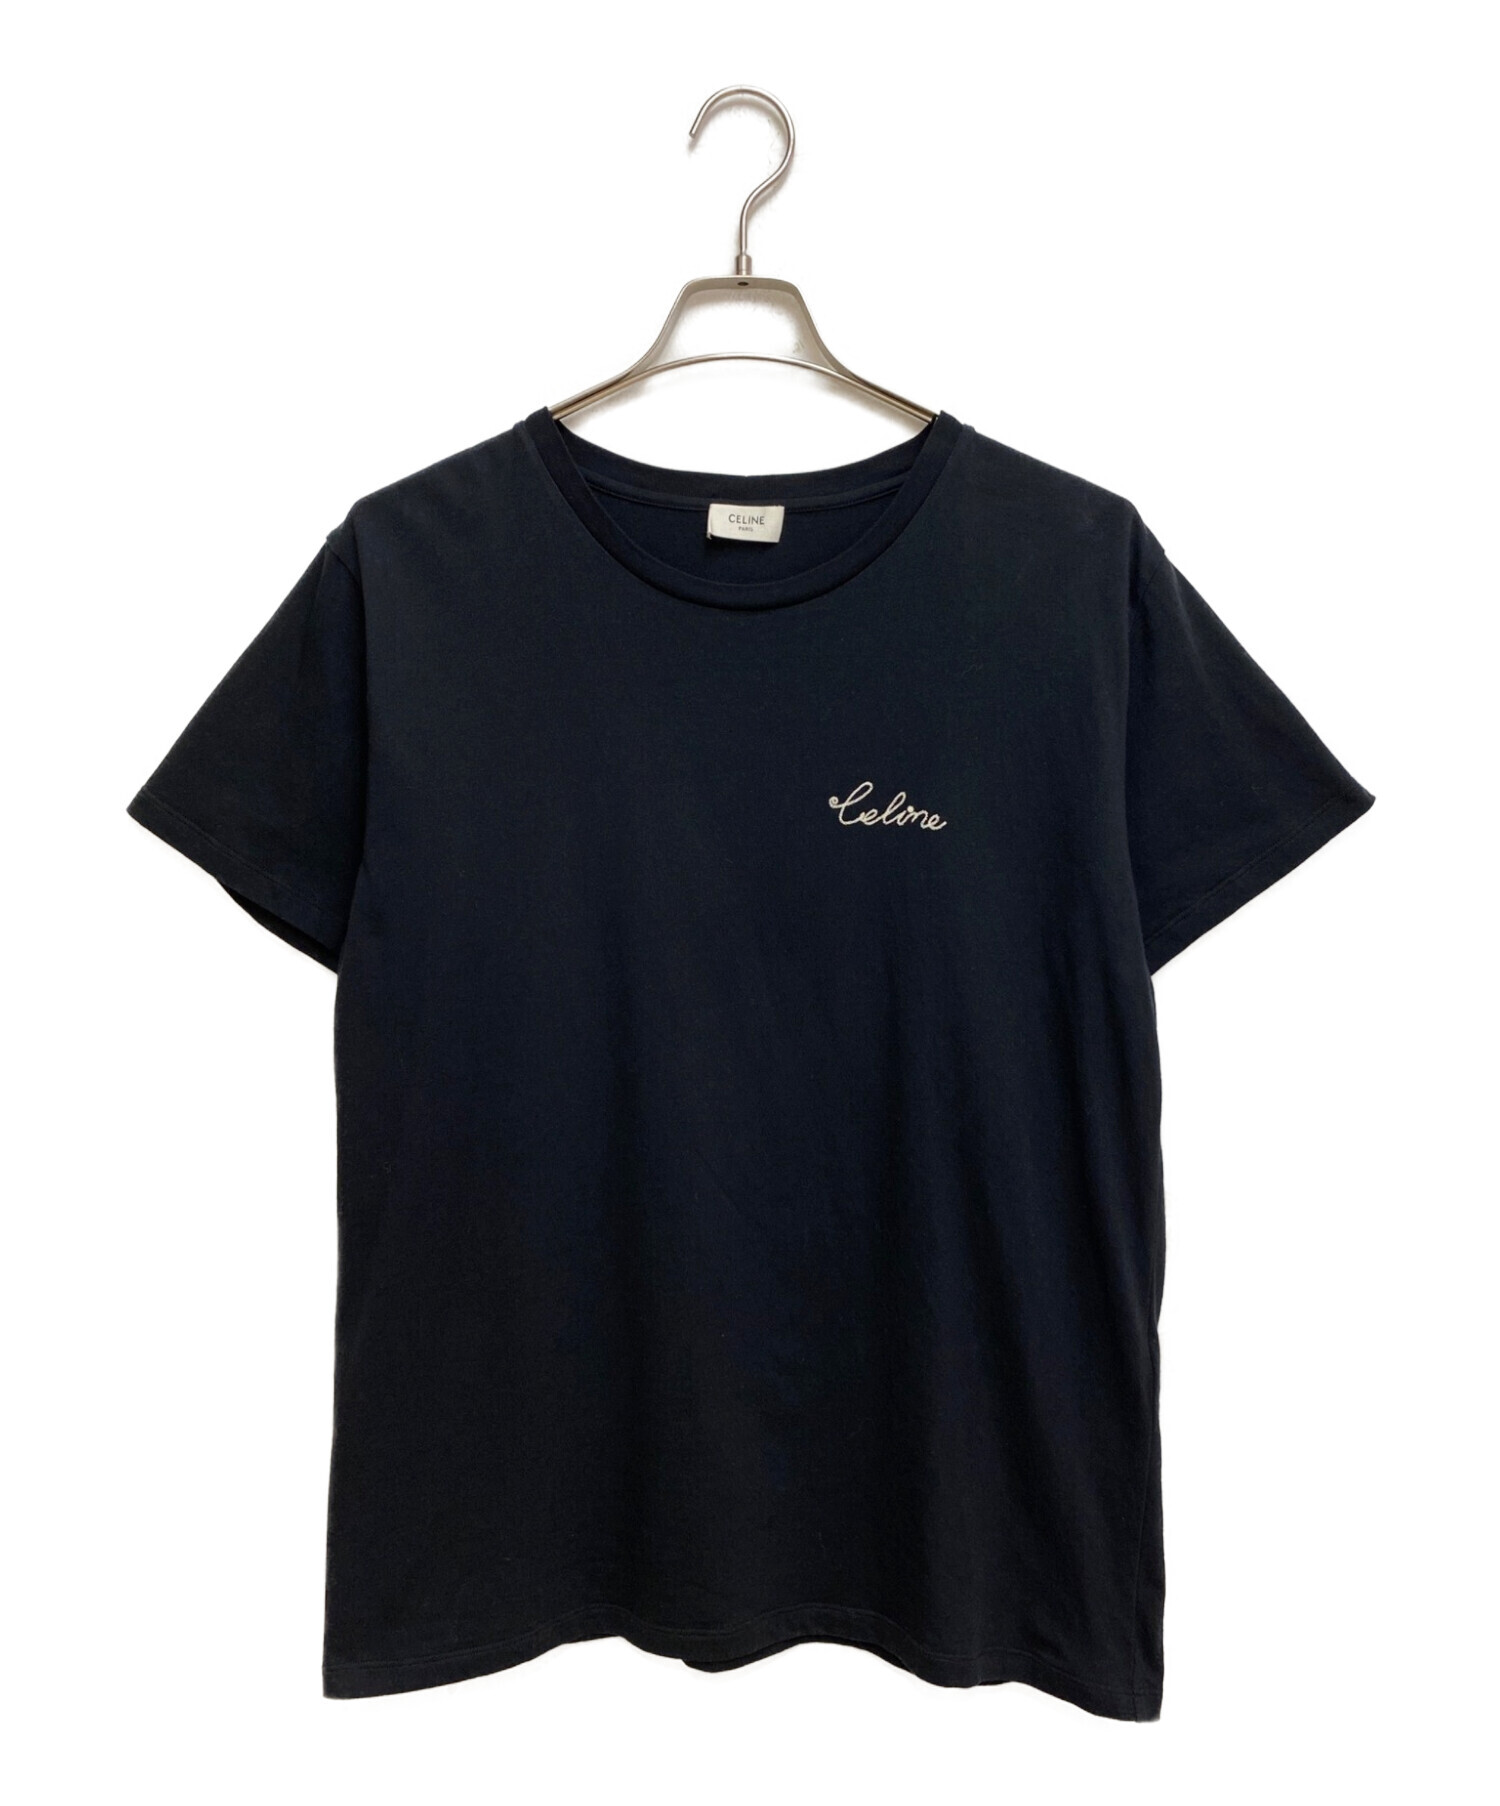 CELINE (セリーヌ) エンブロイダリー Tシャツ ブラック サイズ:M